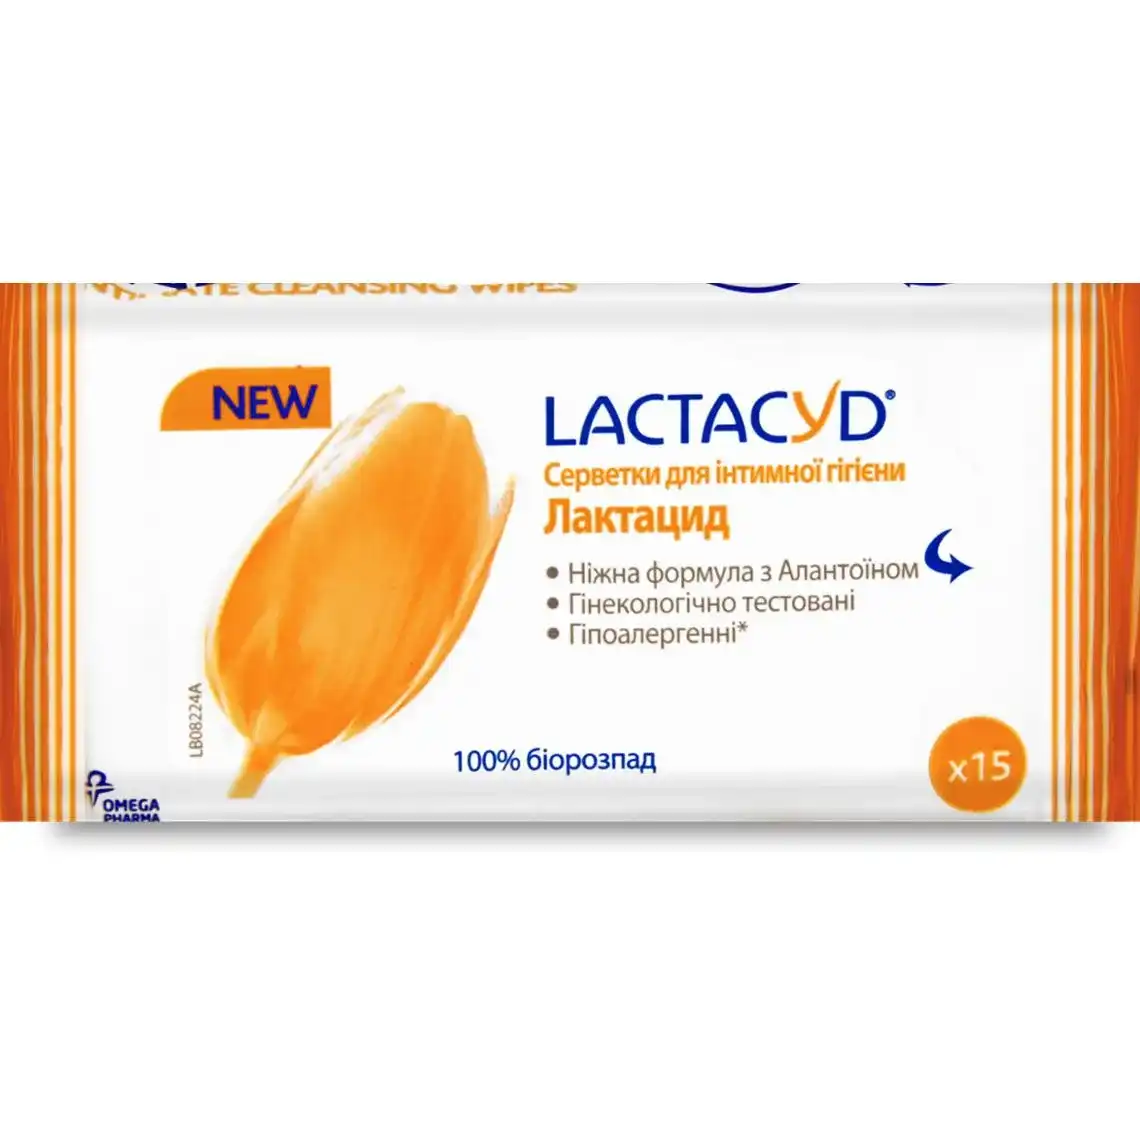 Серветки Lactacyd для інтимної гігієни 15 шт